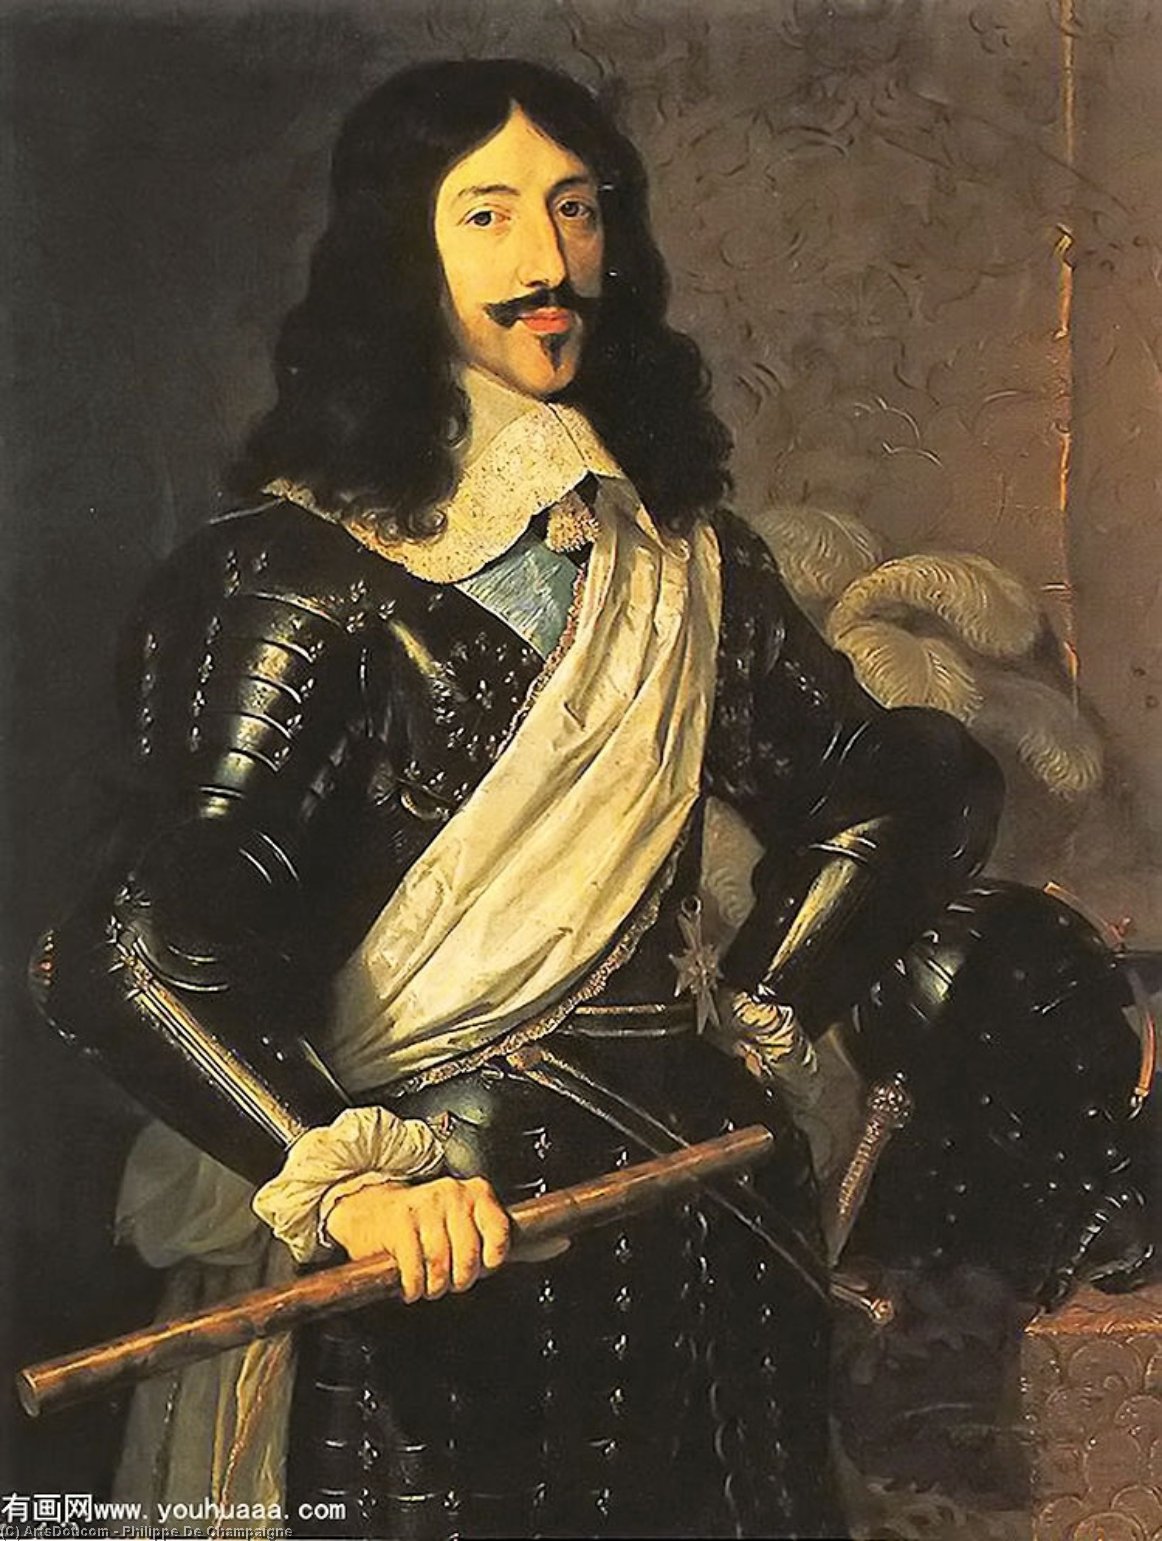 WikiOO.org - Encyclopedia of Fine Arts - Målning, konstverk Philippe De Champaigne - King Louis XIII